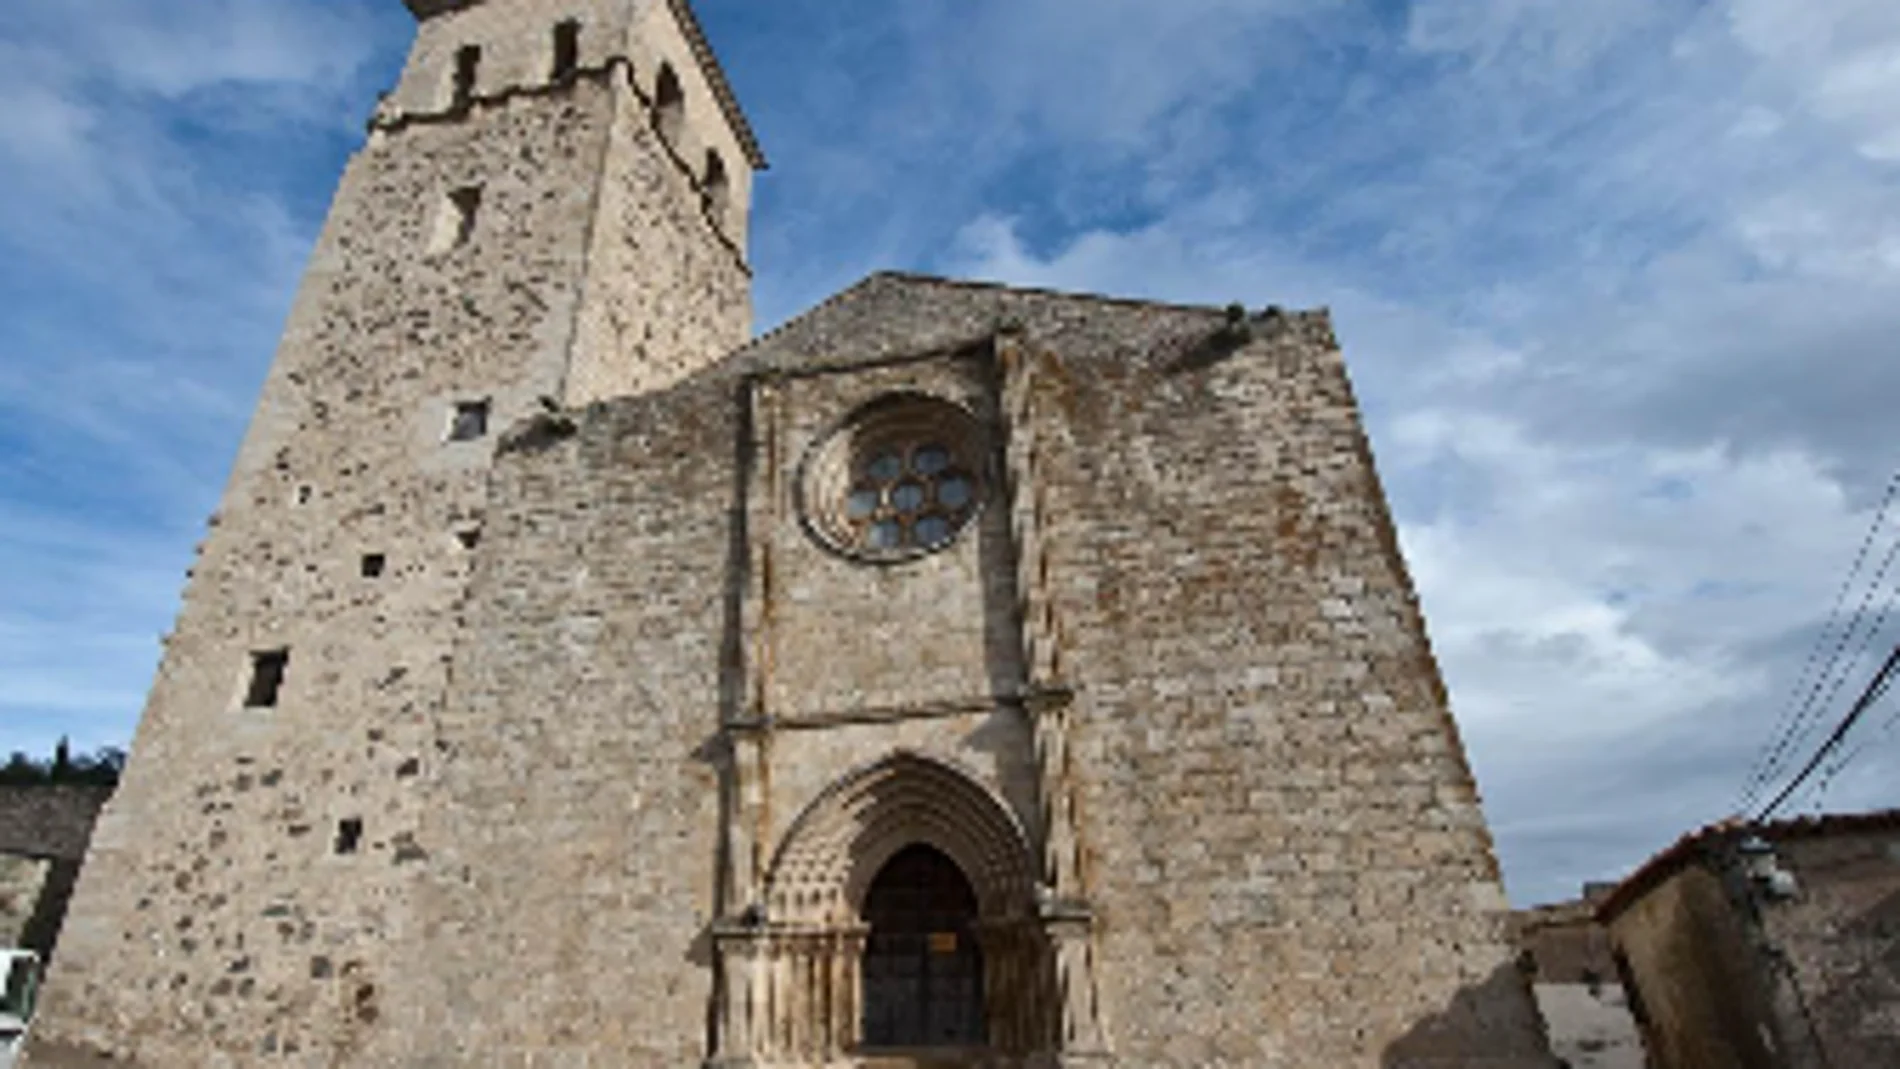  Iglesia de Santa María la Mayor de Trujillo